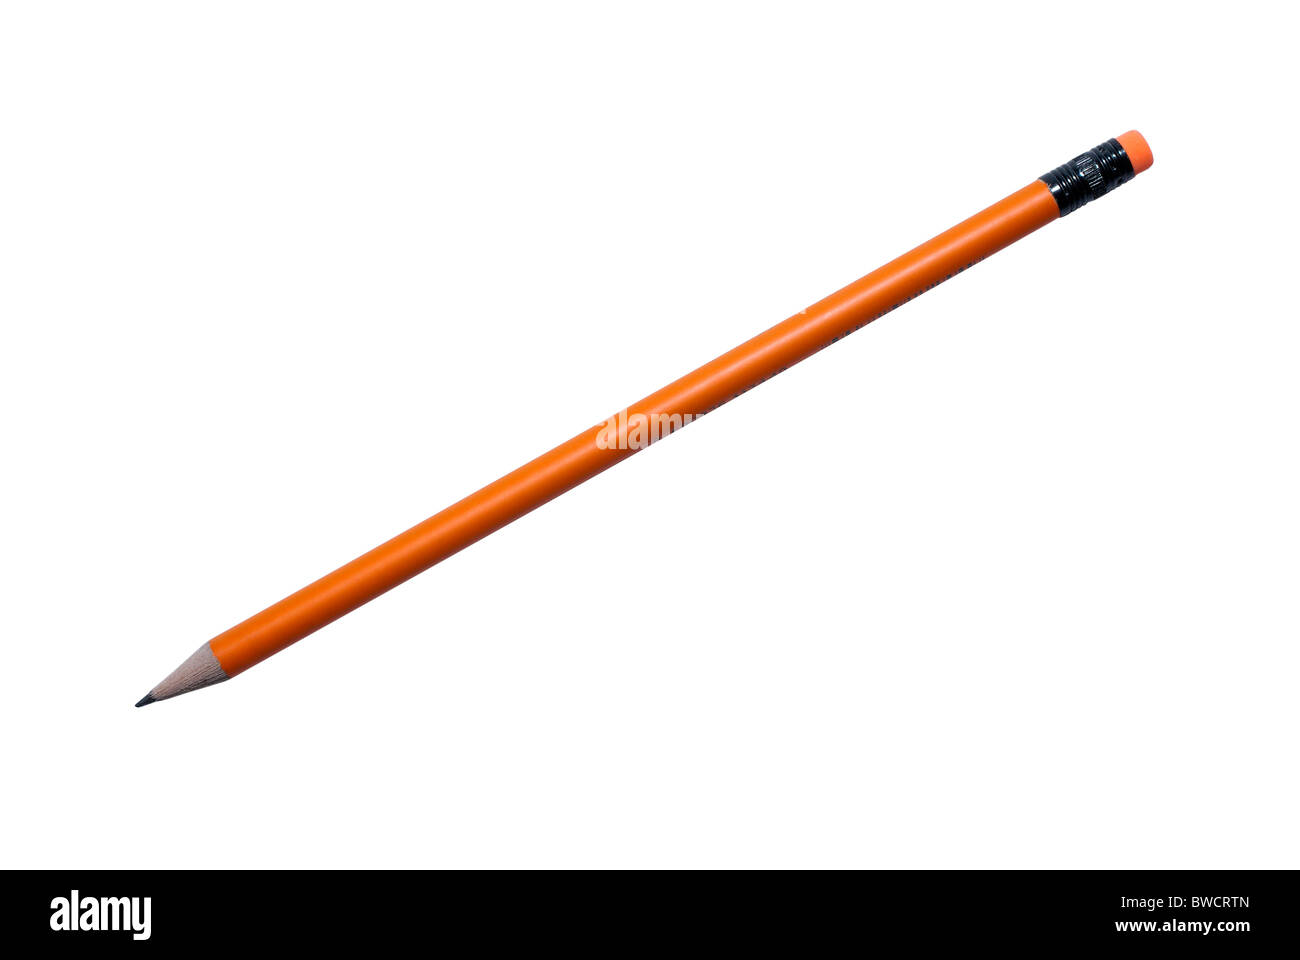 Bạn đang tìm kiếm một sản phẩm bút chì màu cam hiện đại và đẹp mắt để sử dụng trong những công việc sáng tạo của mình? Hãy xem ảnh này để khám phá chiếc bút chì màu cam được làm bằng hợp kim đen tuyệt đẹp và được cô lập trên nền trắng, để bạn có thể nhìn rõ từng chi tiết của nó.